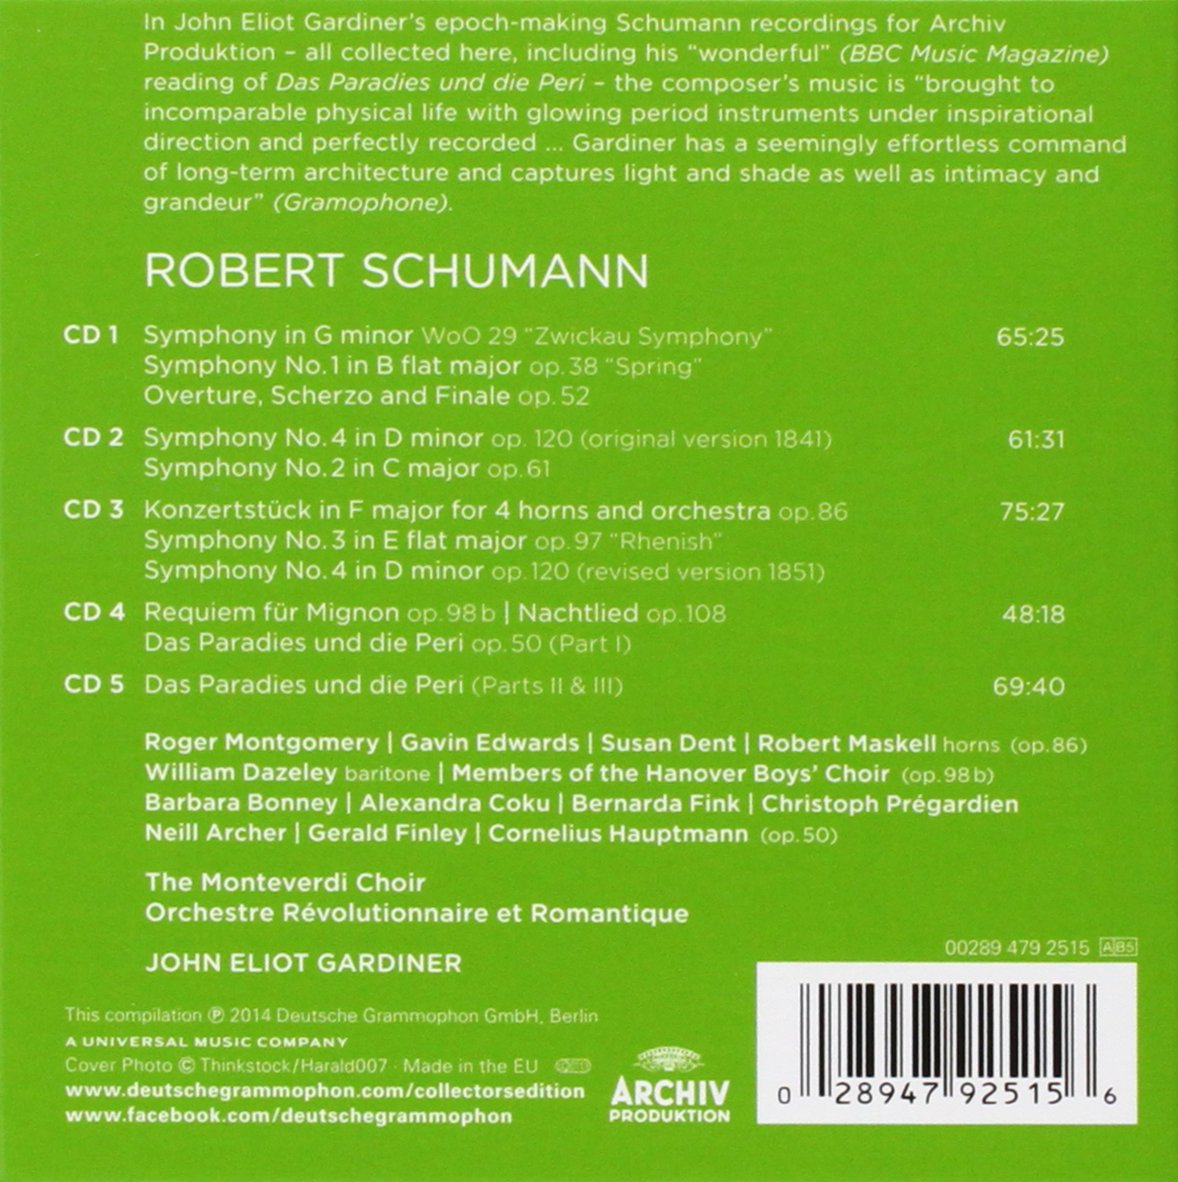 Schumann - Complete Symphonies; Das Paradies und die Peri - Gardiner (5 CDs)